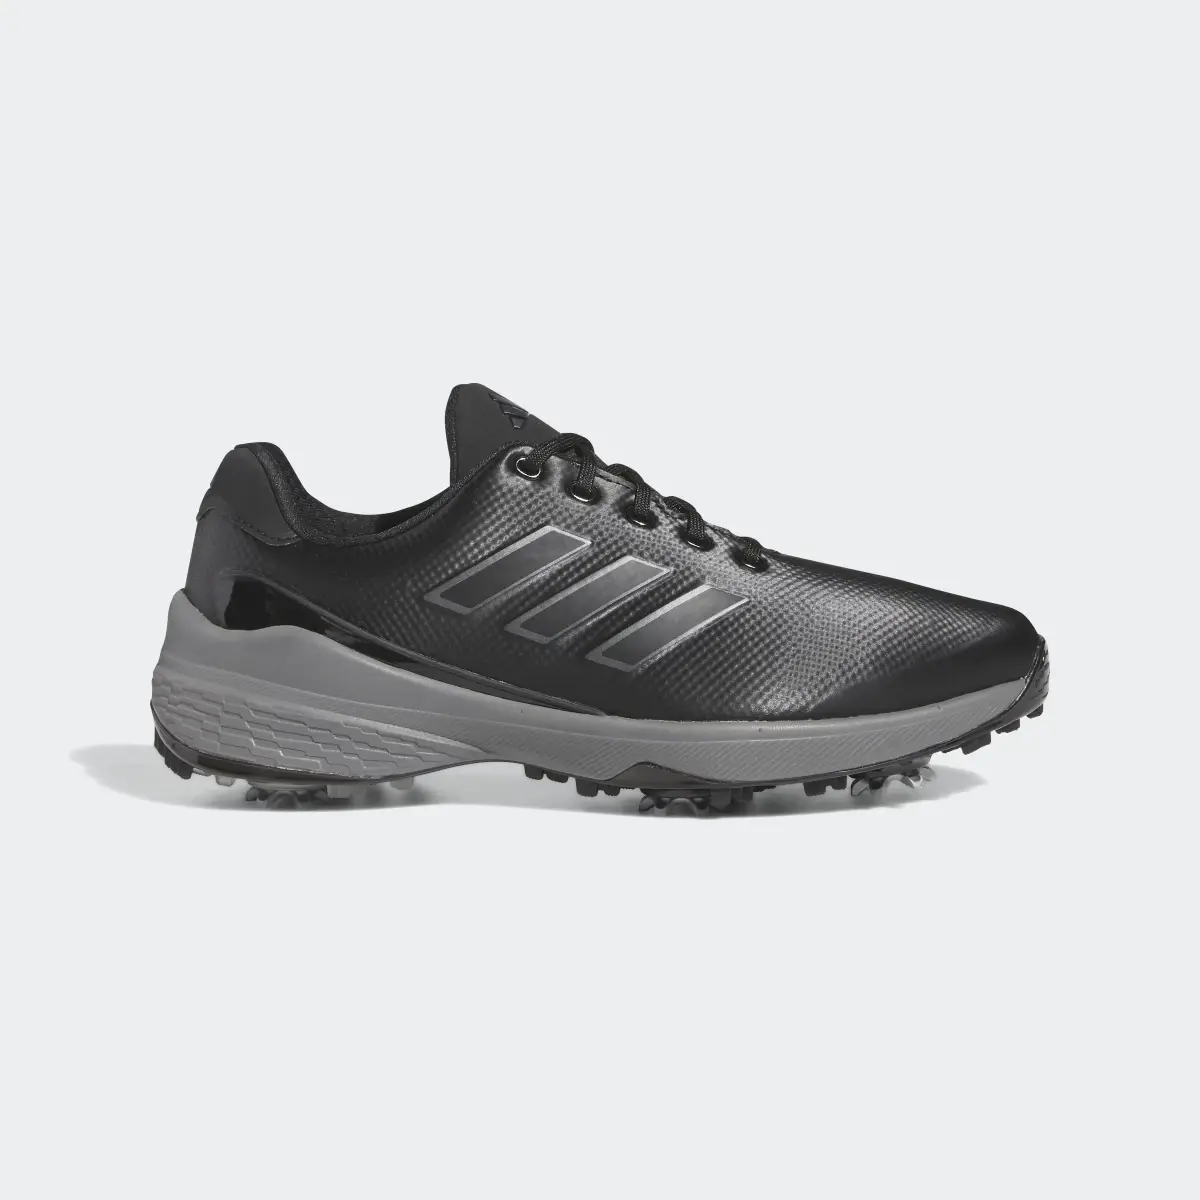 Adidas ZG23 Golf Shoes. 2